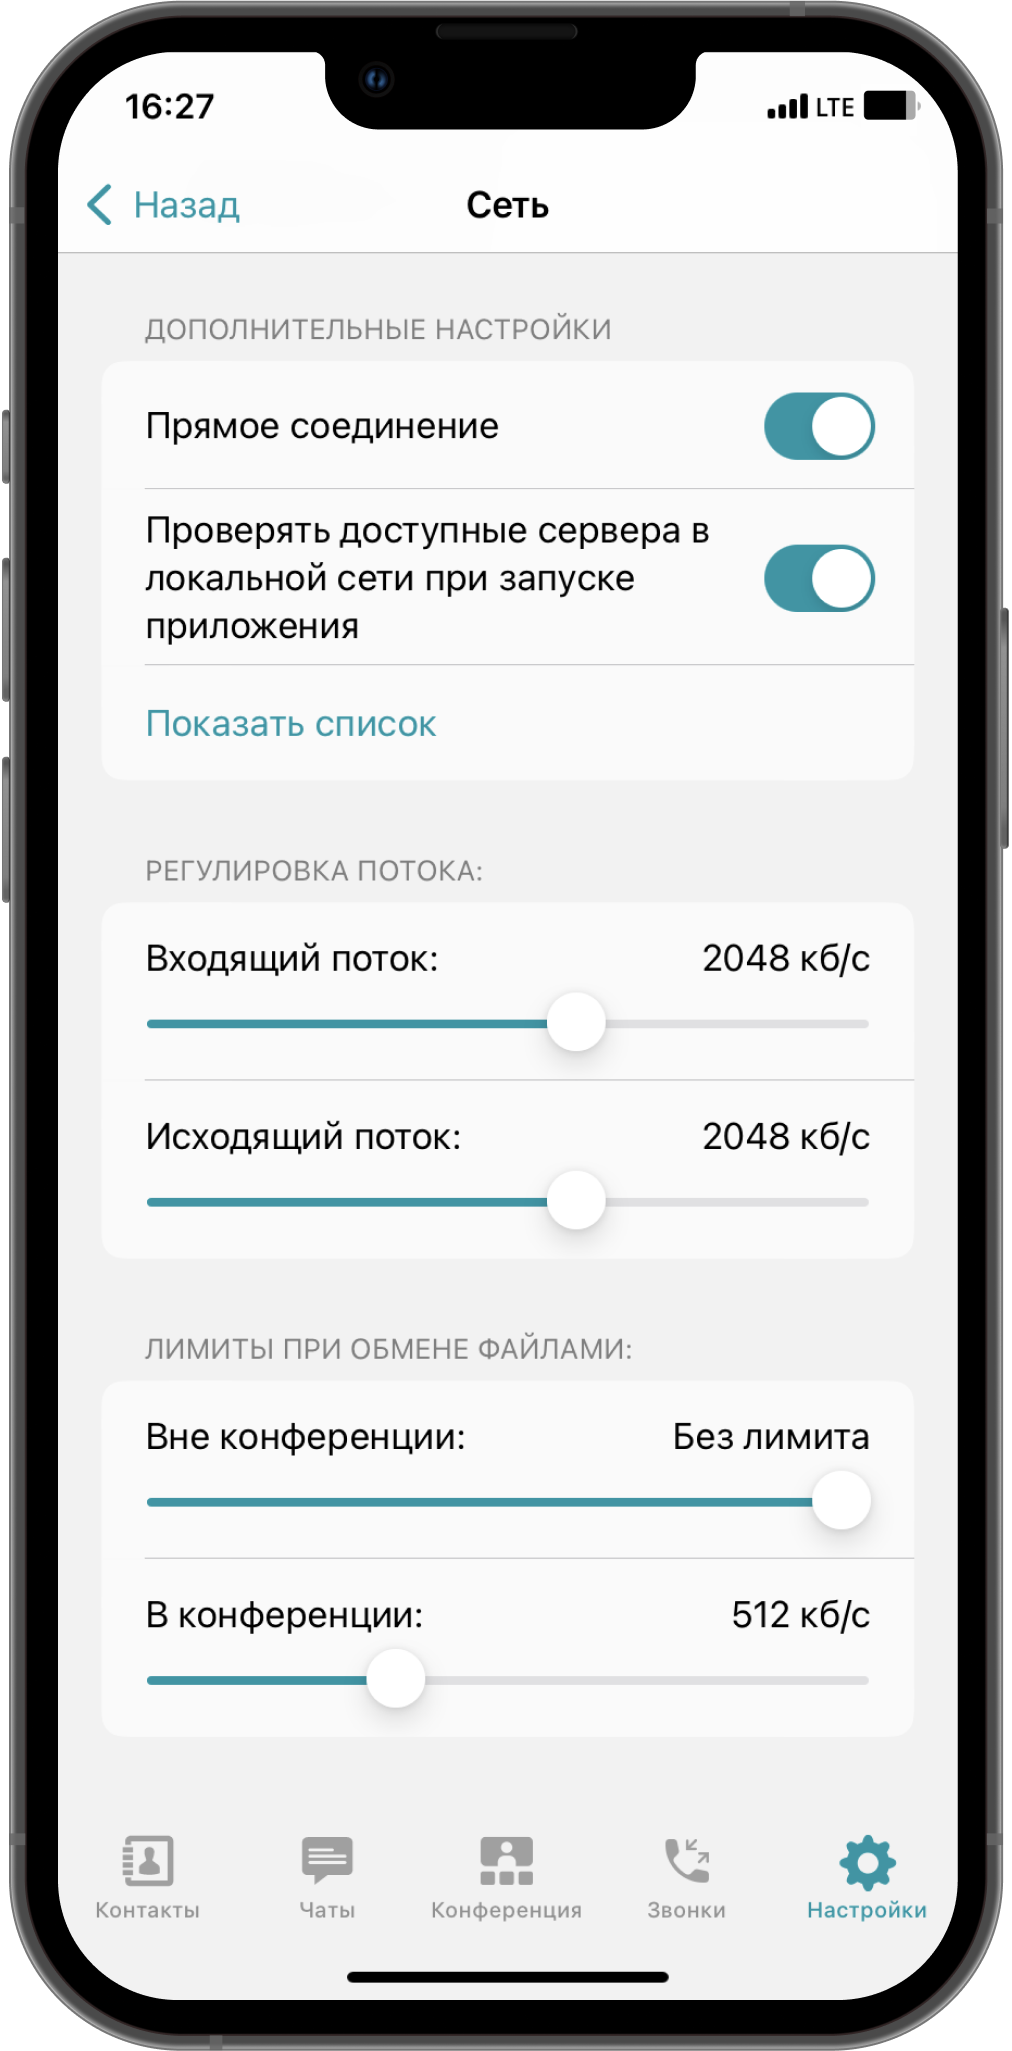 TrueConf 3.4.3 для iOS: Удобный запуск номеронабирателя, индикация выключенного микрофона и обновленное меню «Настройки» 7